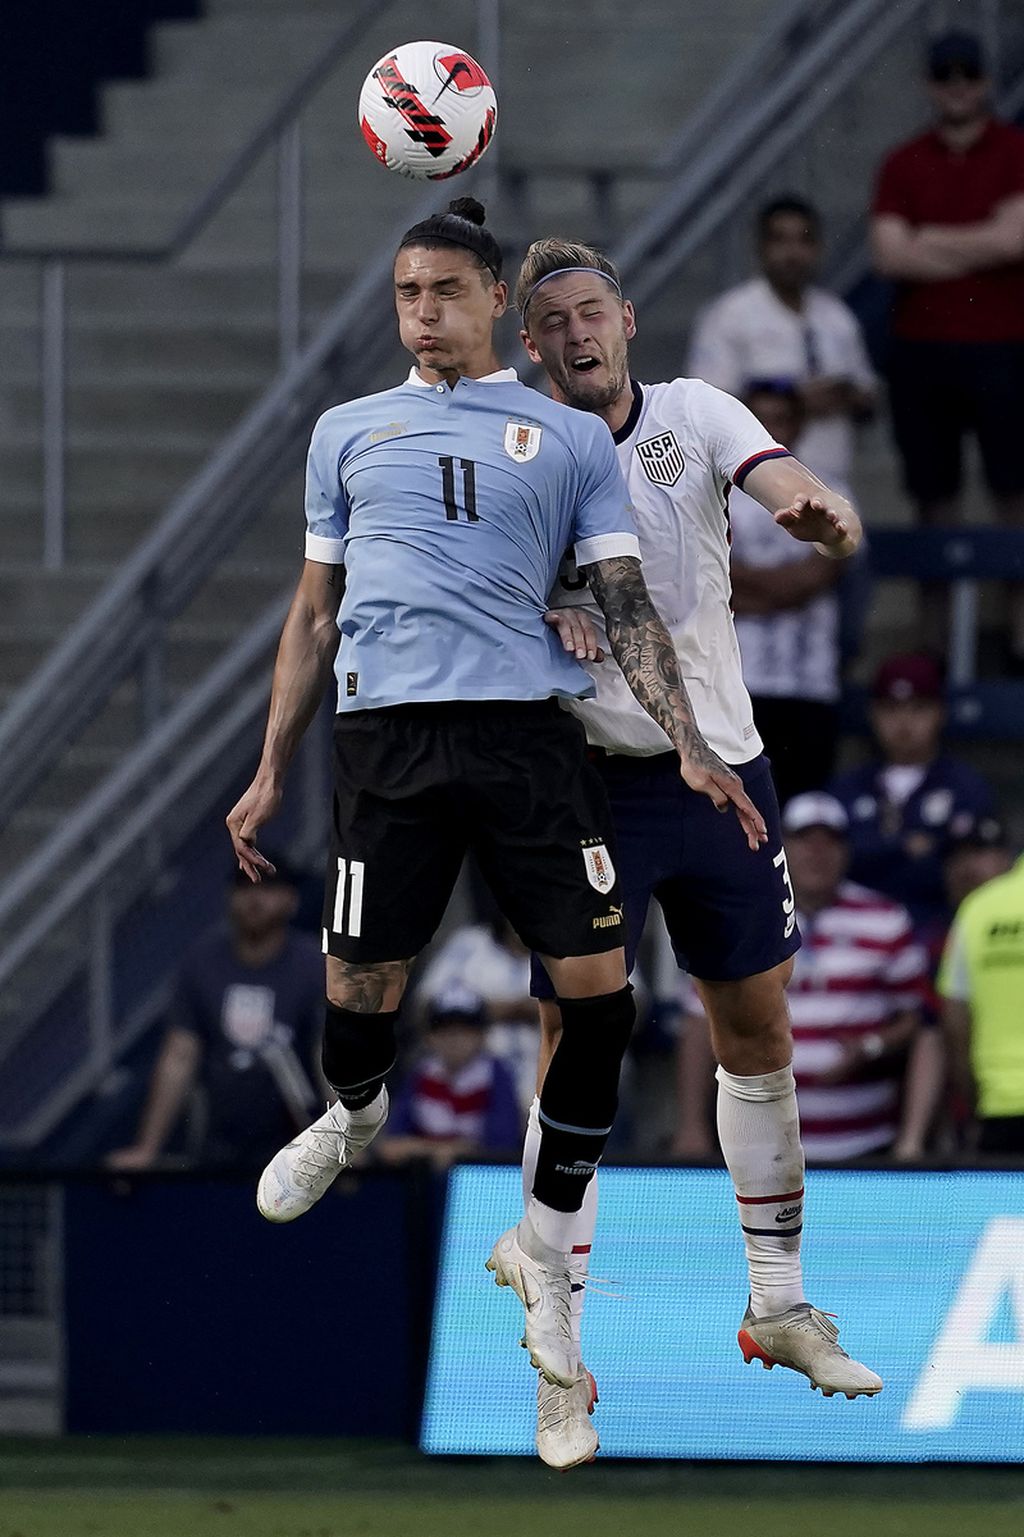 Penyerang Uruguay, Darwin Nunez (kiri), dan bek AS, Walker Zimmerman, berduel di udara pada pertandingan persahabatan antara Uruguay dan Amerika Serikat di Kansas, AS, Minggu (5/6/2022). Nunez akan memperkuat Liverpool mulai musim 2022/2023 hingga kontraknya berakhir pada 30 Juni 2027.